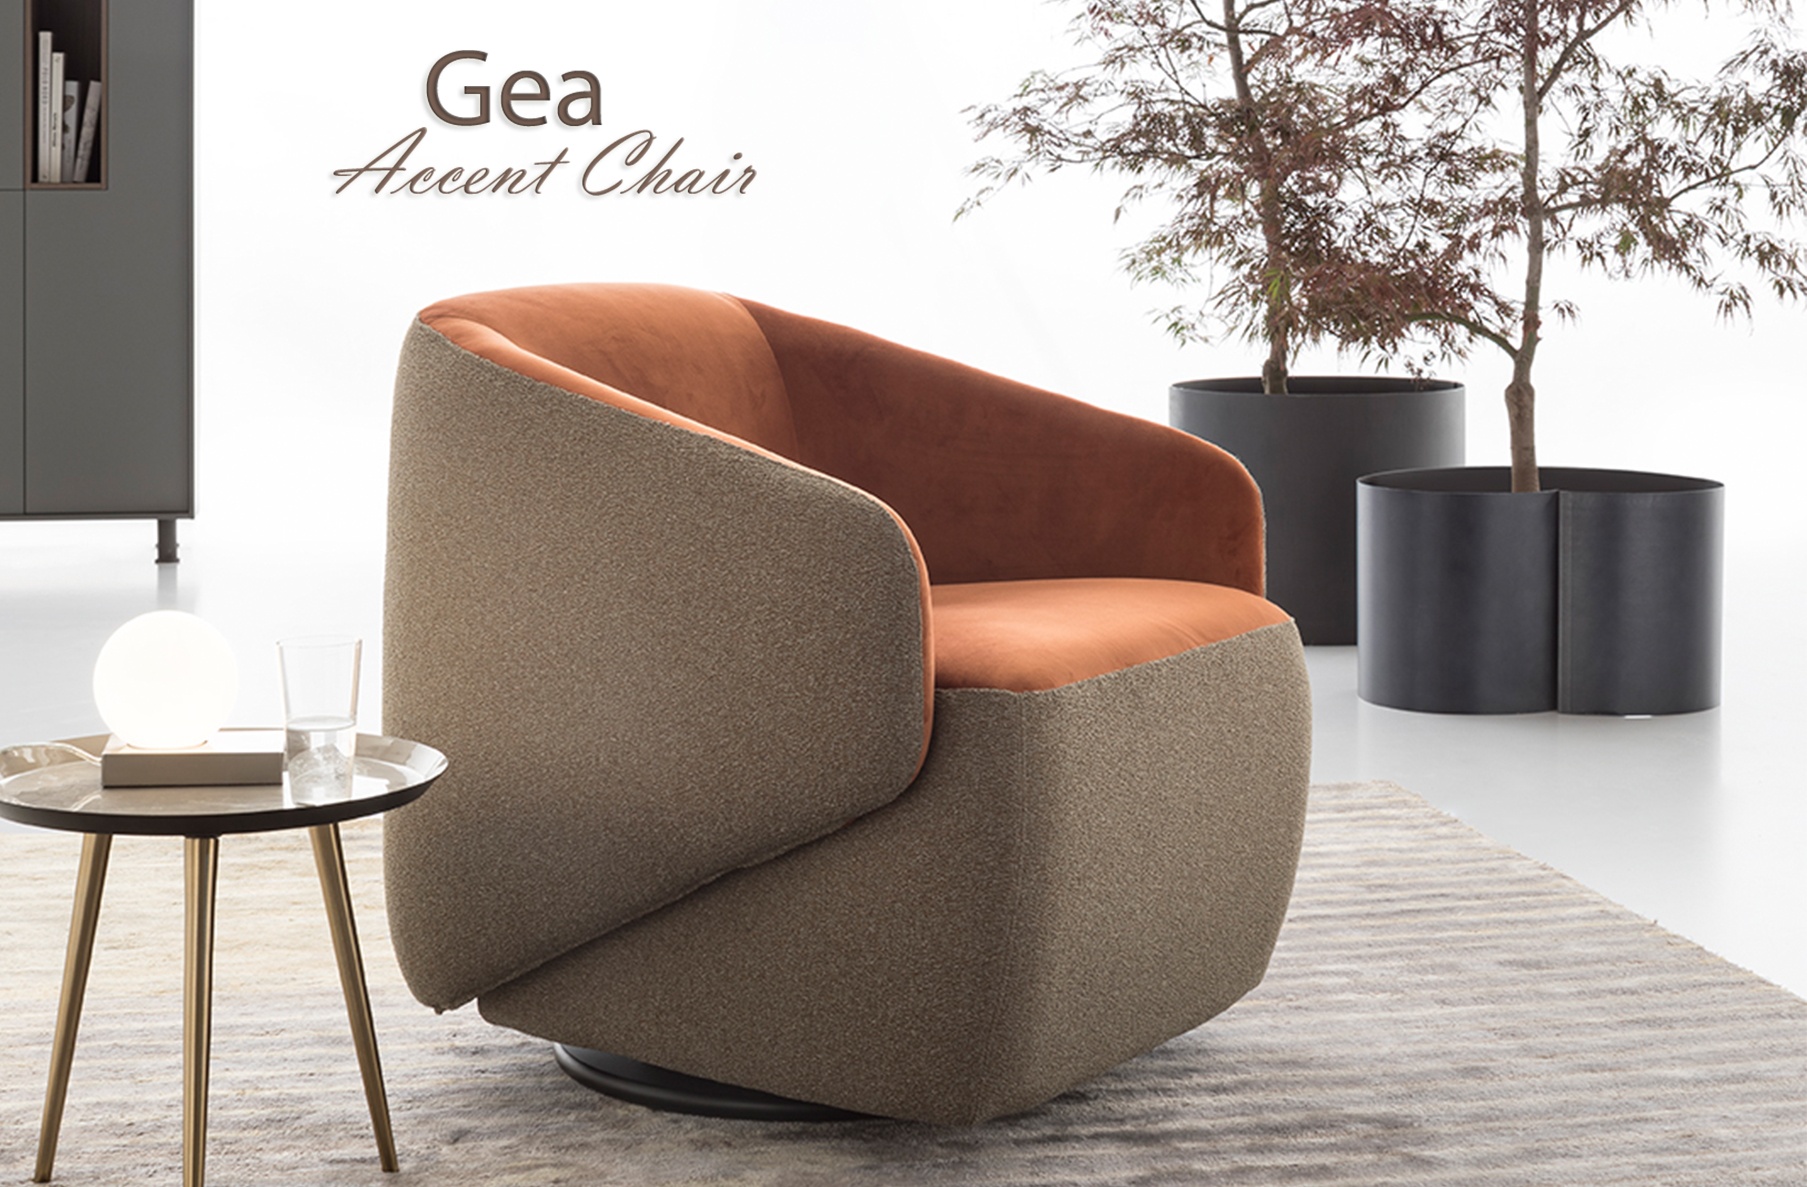 Gea Accent Chair, Cheap